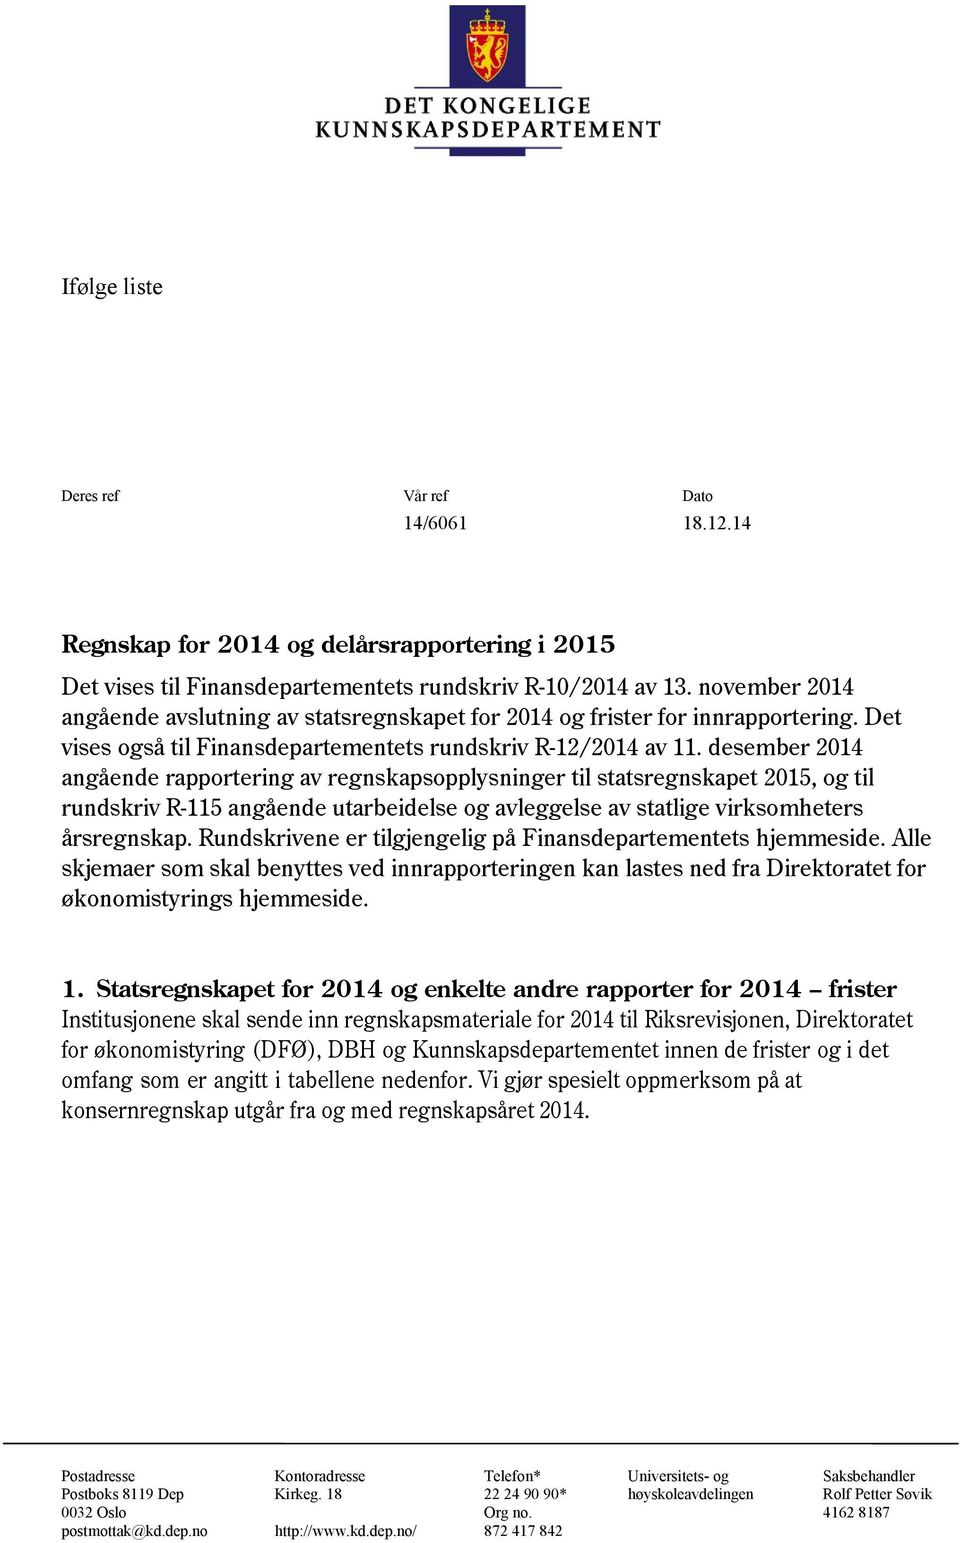 desember 2014 angående rapportering av regnskapsopplysninger til statsregnskapet 2015, og til rundskriv R-115 angående utarbeidelse og avleggelse av statlige virksomheters årsregnskap.